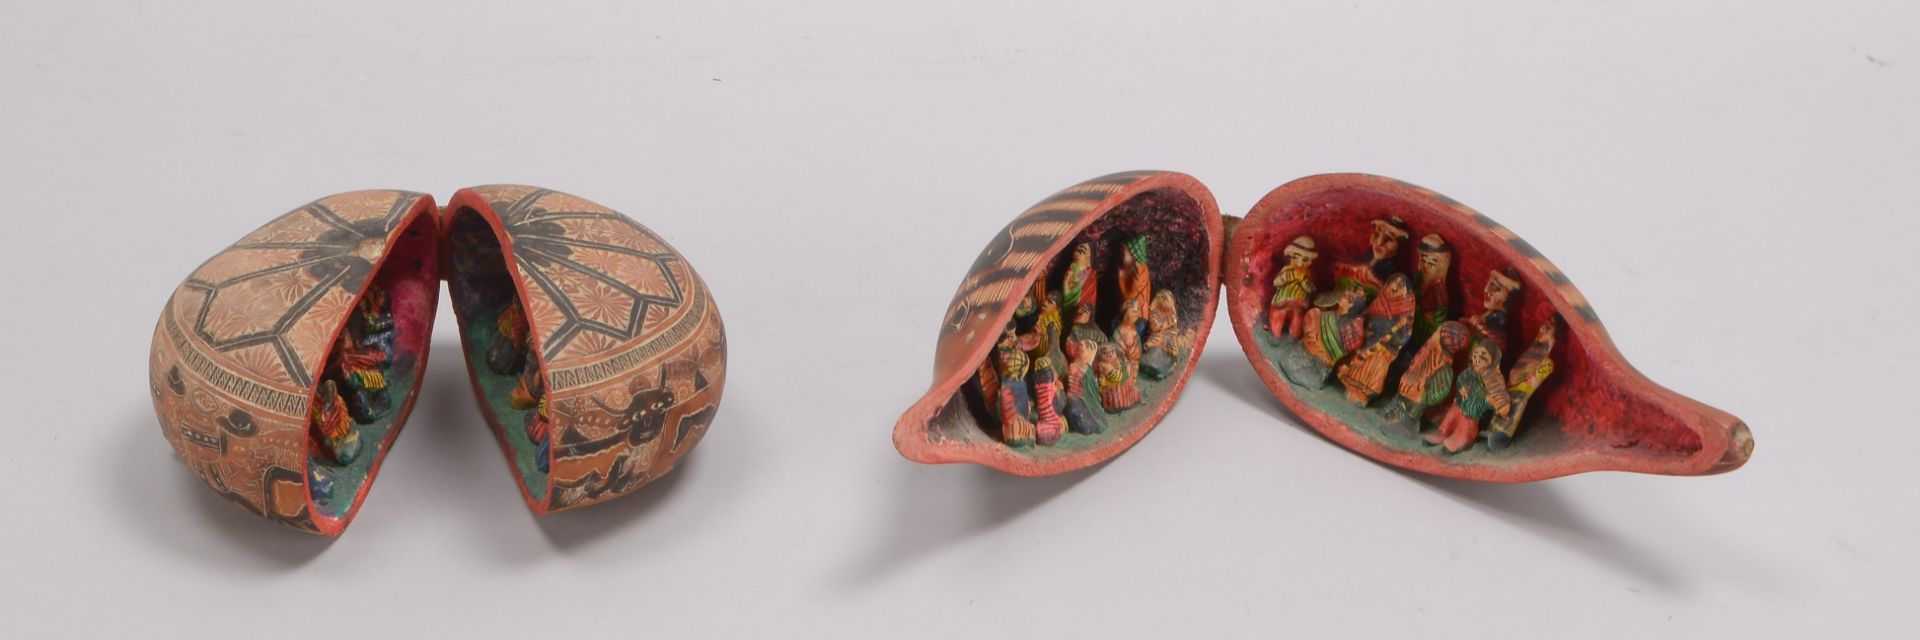 2 Kalebassen-Kürbisse (wohl südamerikanische Volkskunst), innen mit plastischem Figurenbesatz - Bild 2 aus 3